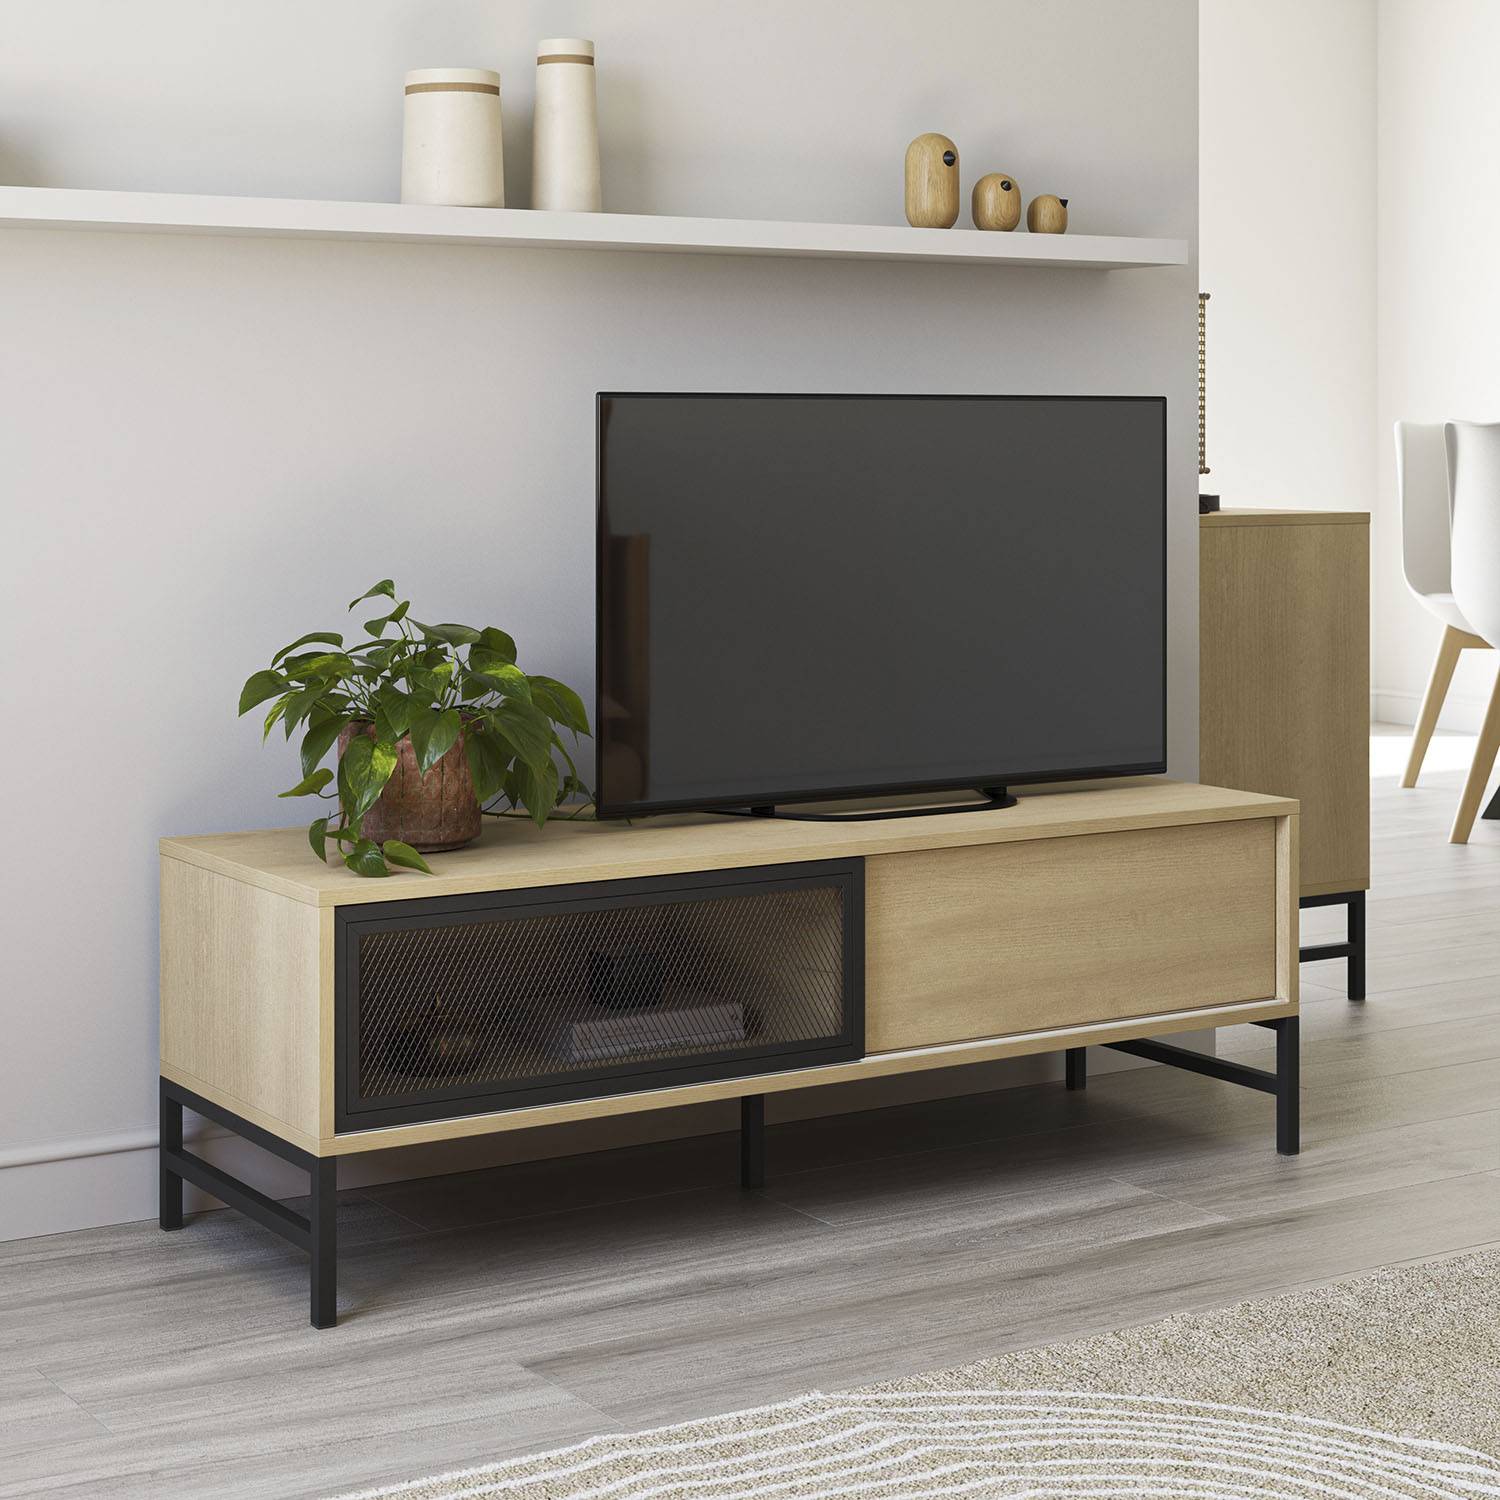 MUEBLE TV de estilo MODERNO fabricado y diseñado en madera maciza de pino